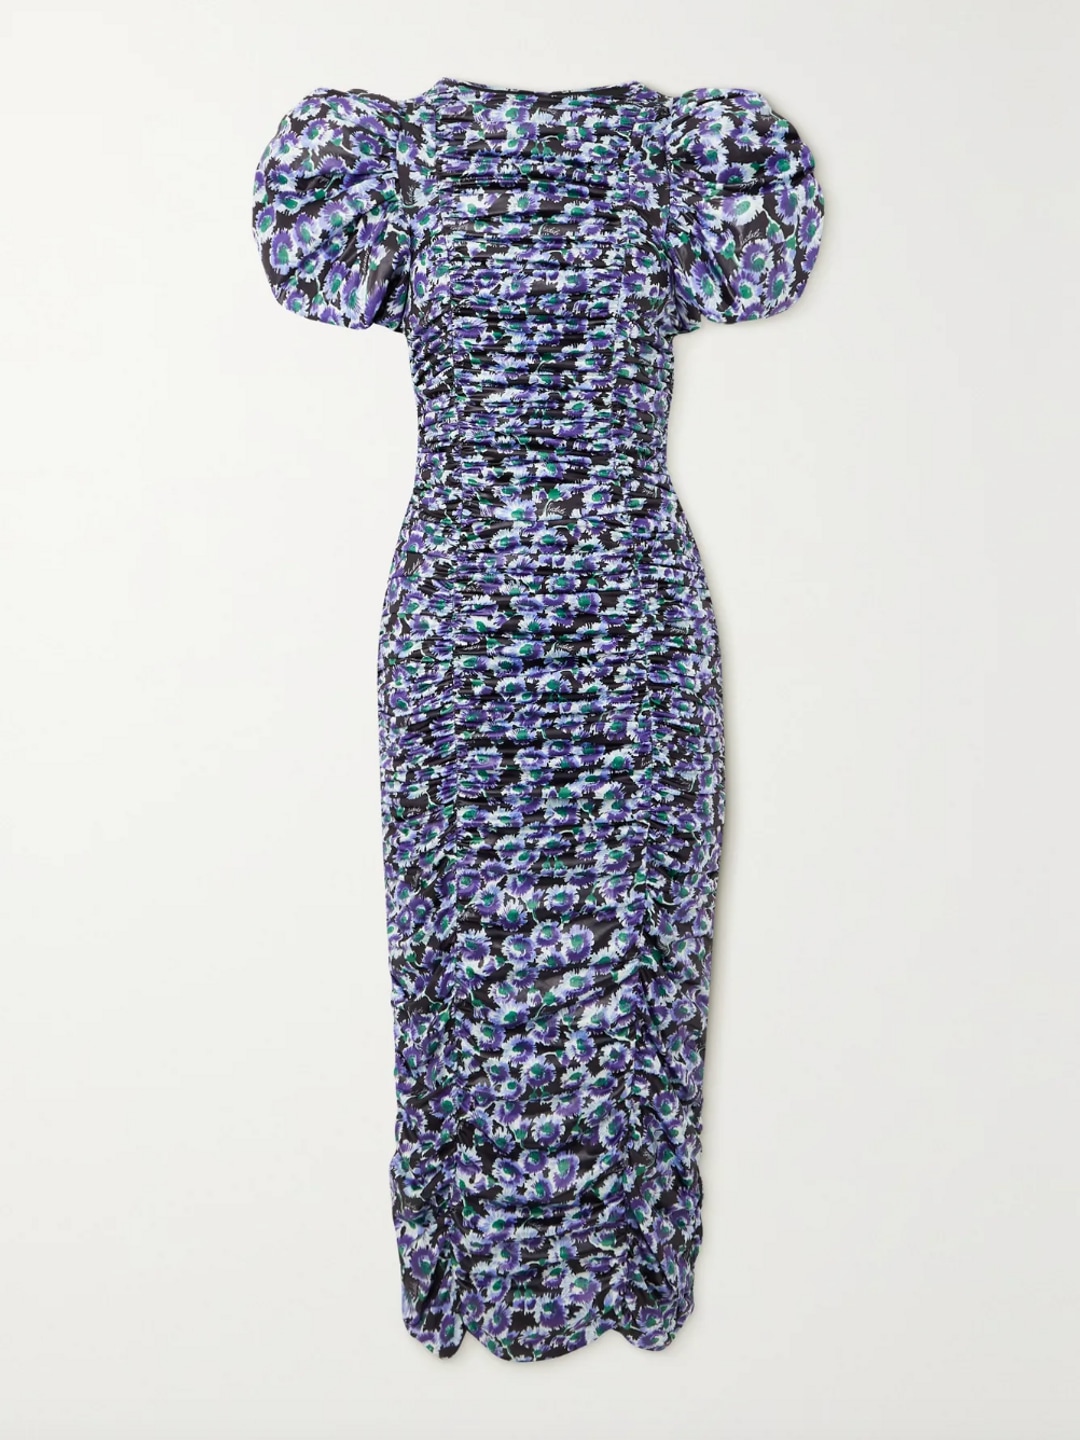 Rotate Birger Christensen floral dress